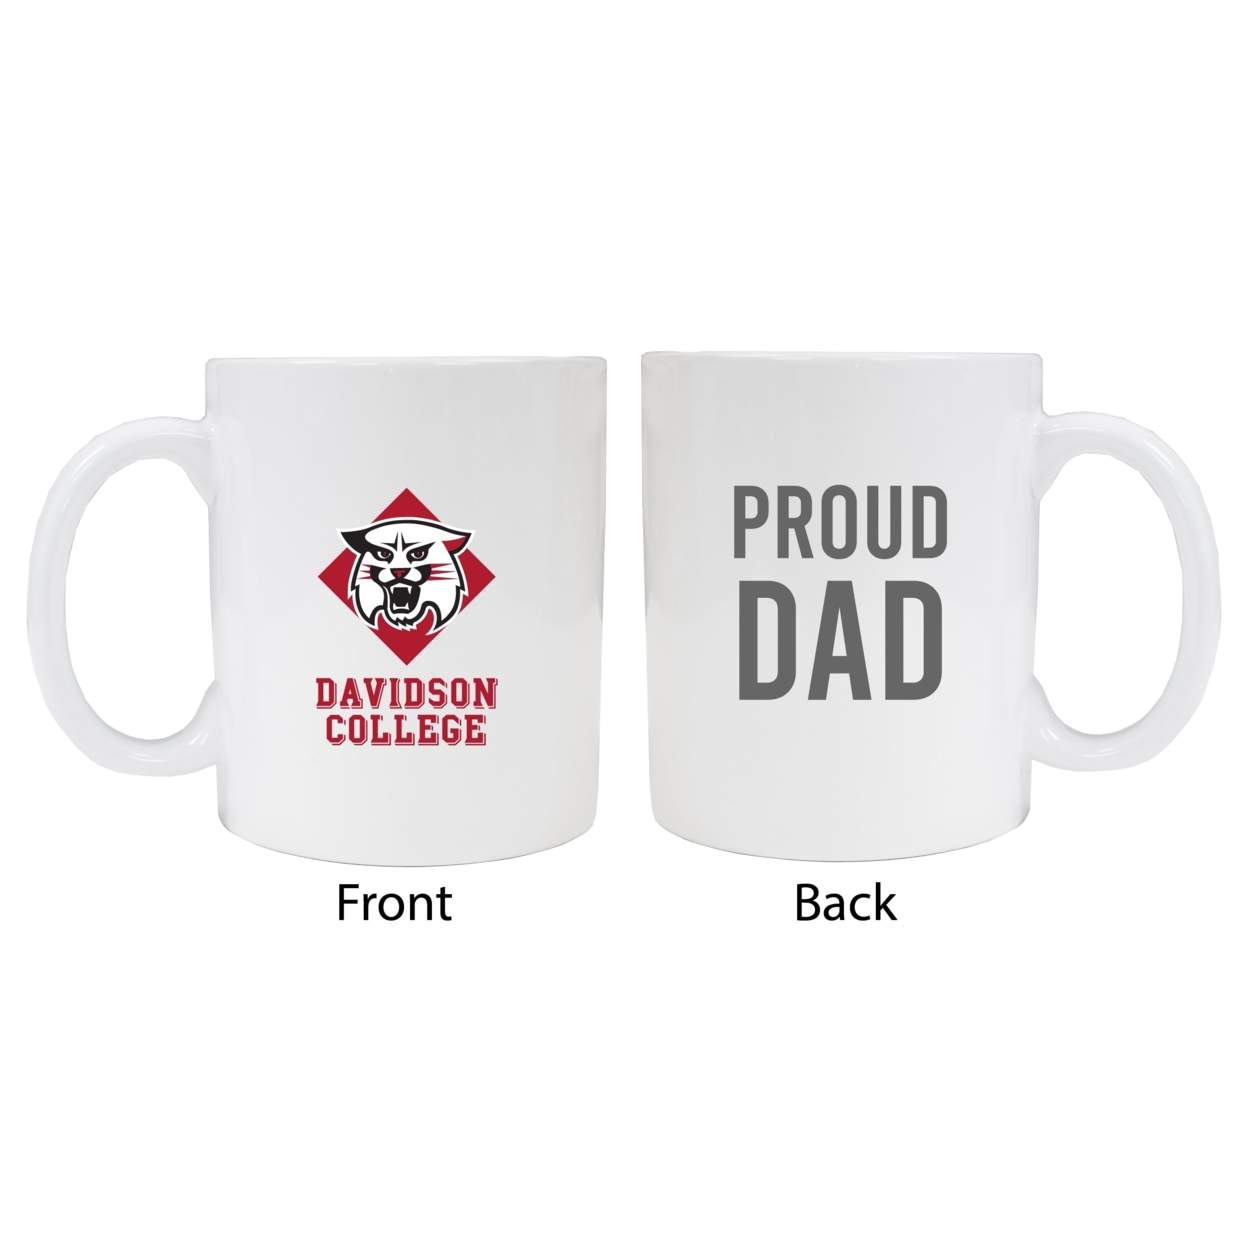 Davidson College Proud Dad Ceramic Coffee Mug - White (2 Pack)